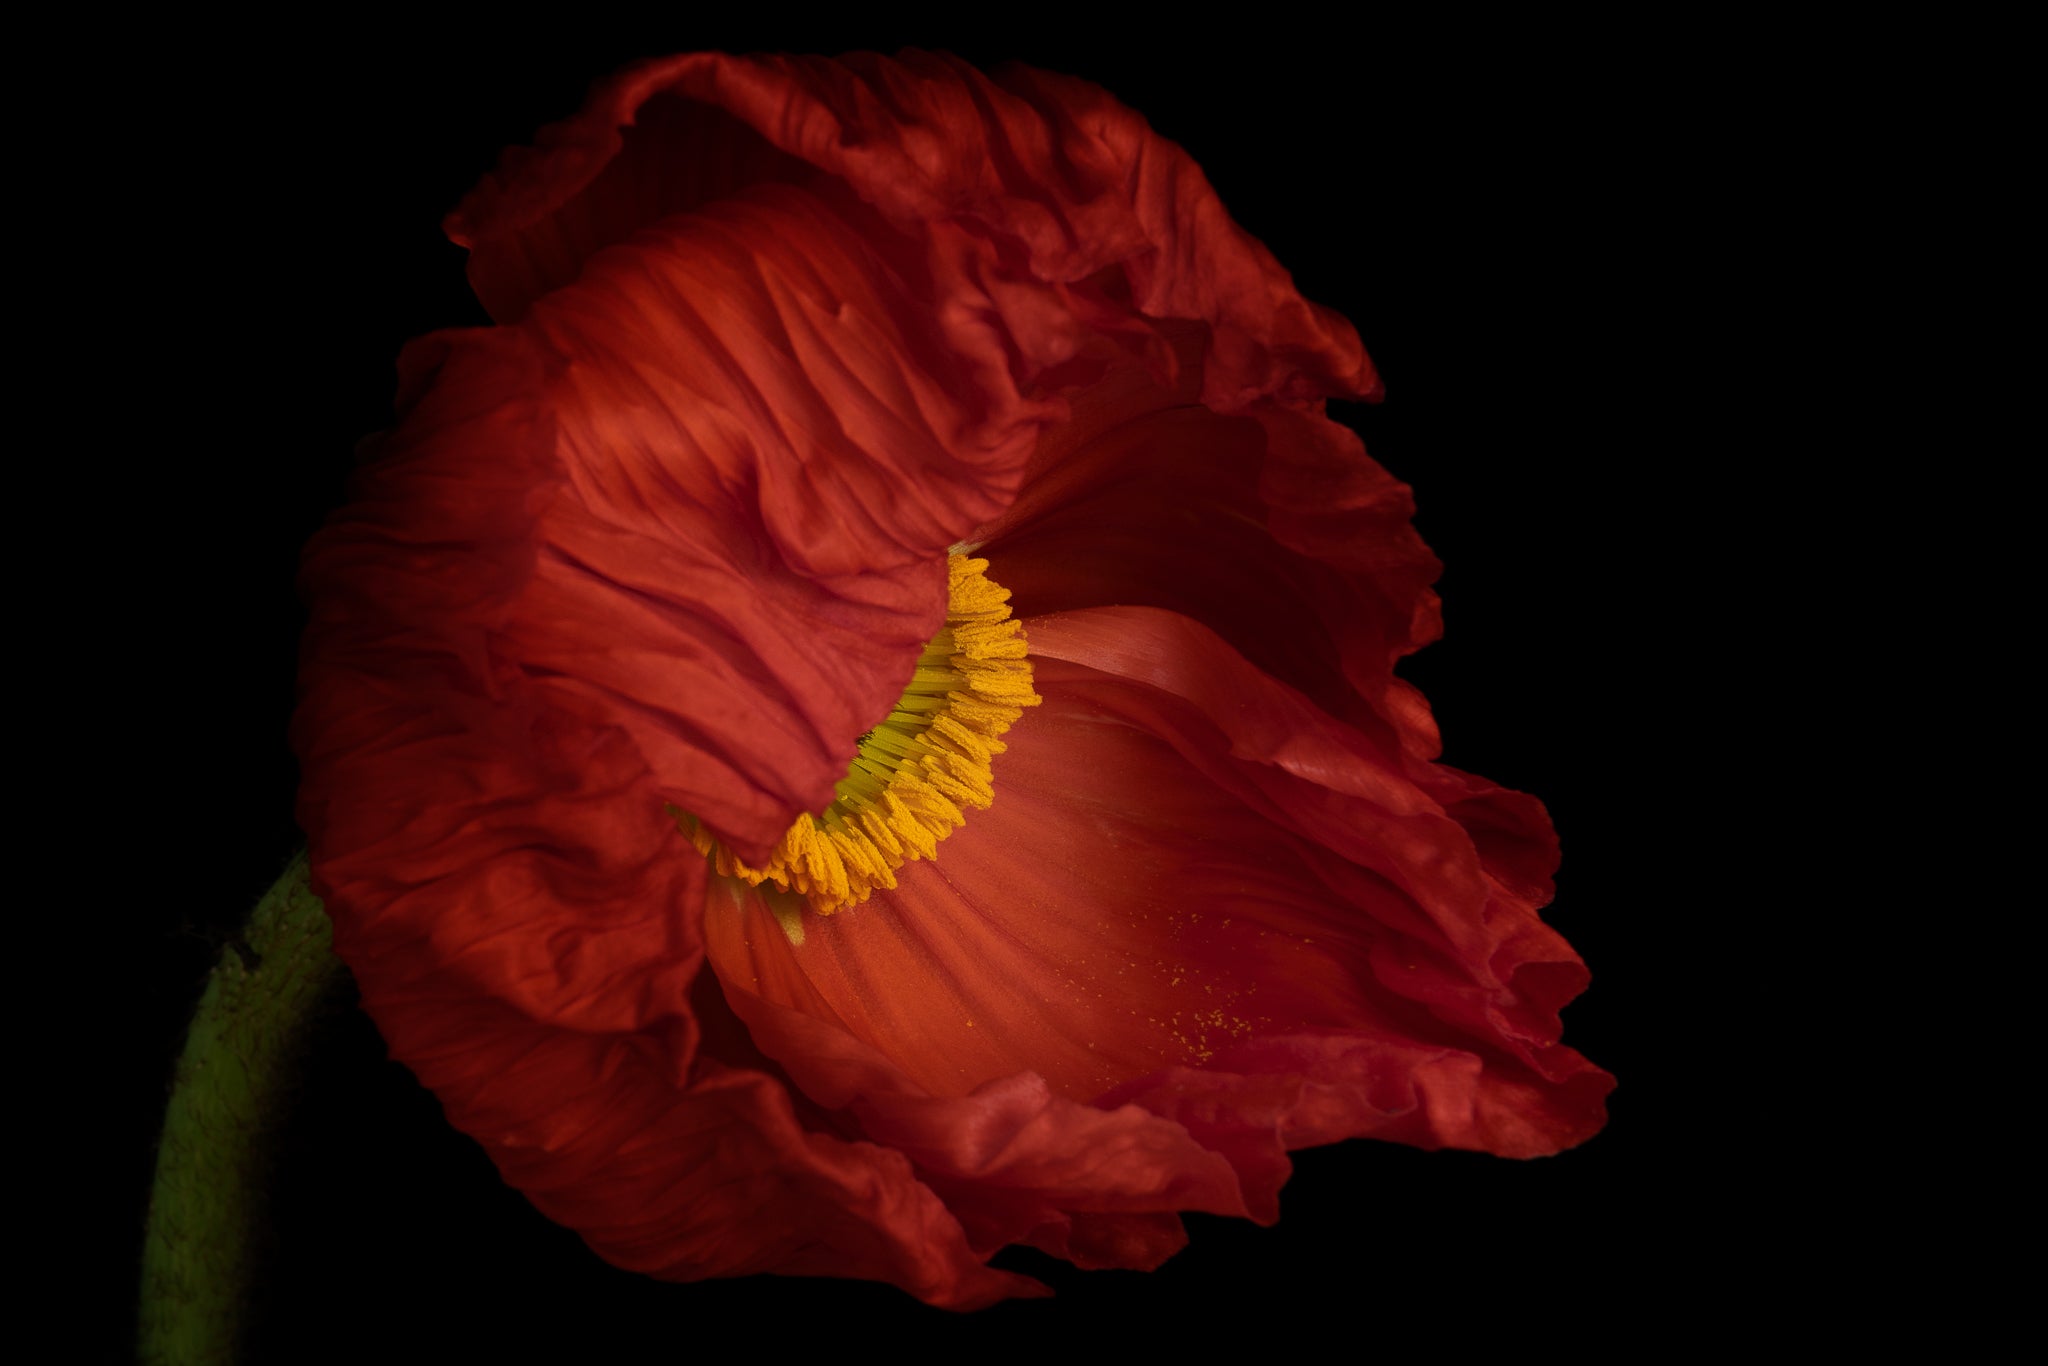 Fine art Flower Photography of an Icelandic Poppy titled "Bashful" by Cameron Dreaux of Dreaux Fine Art. 